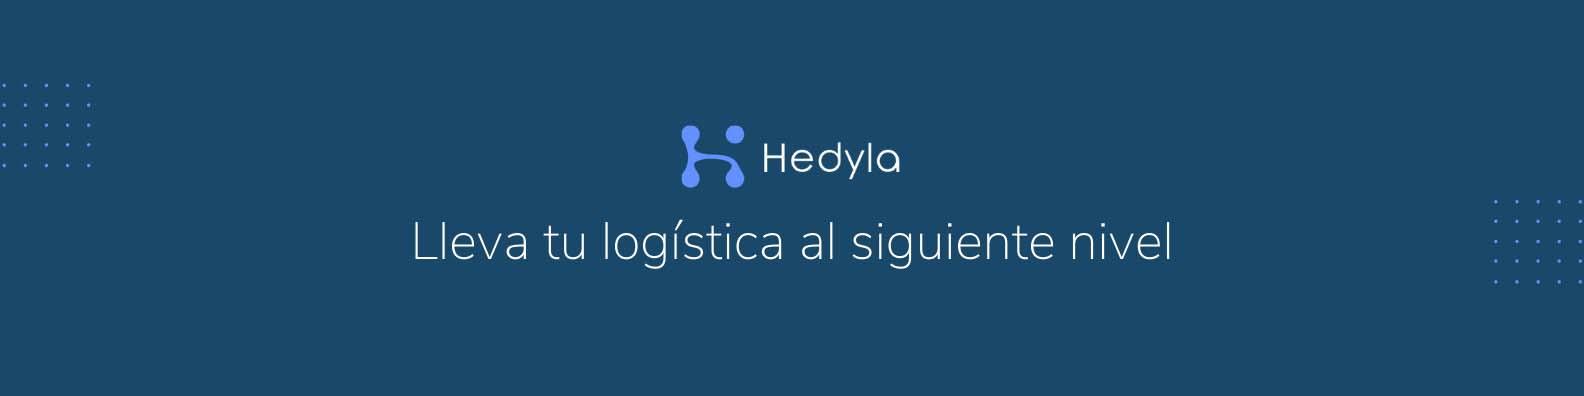 Opiniones Hedyla: Software de logística y distribución - Appvizer